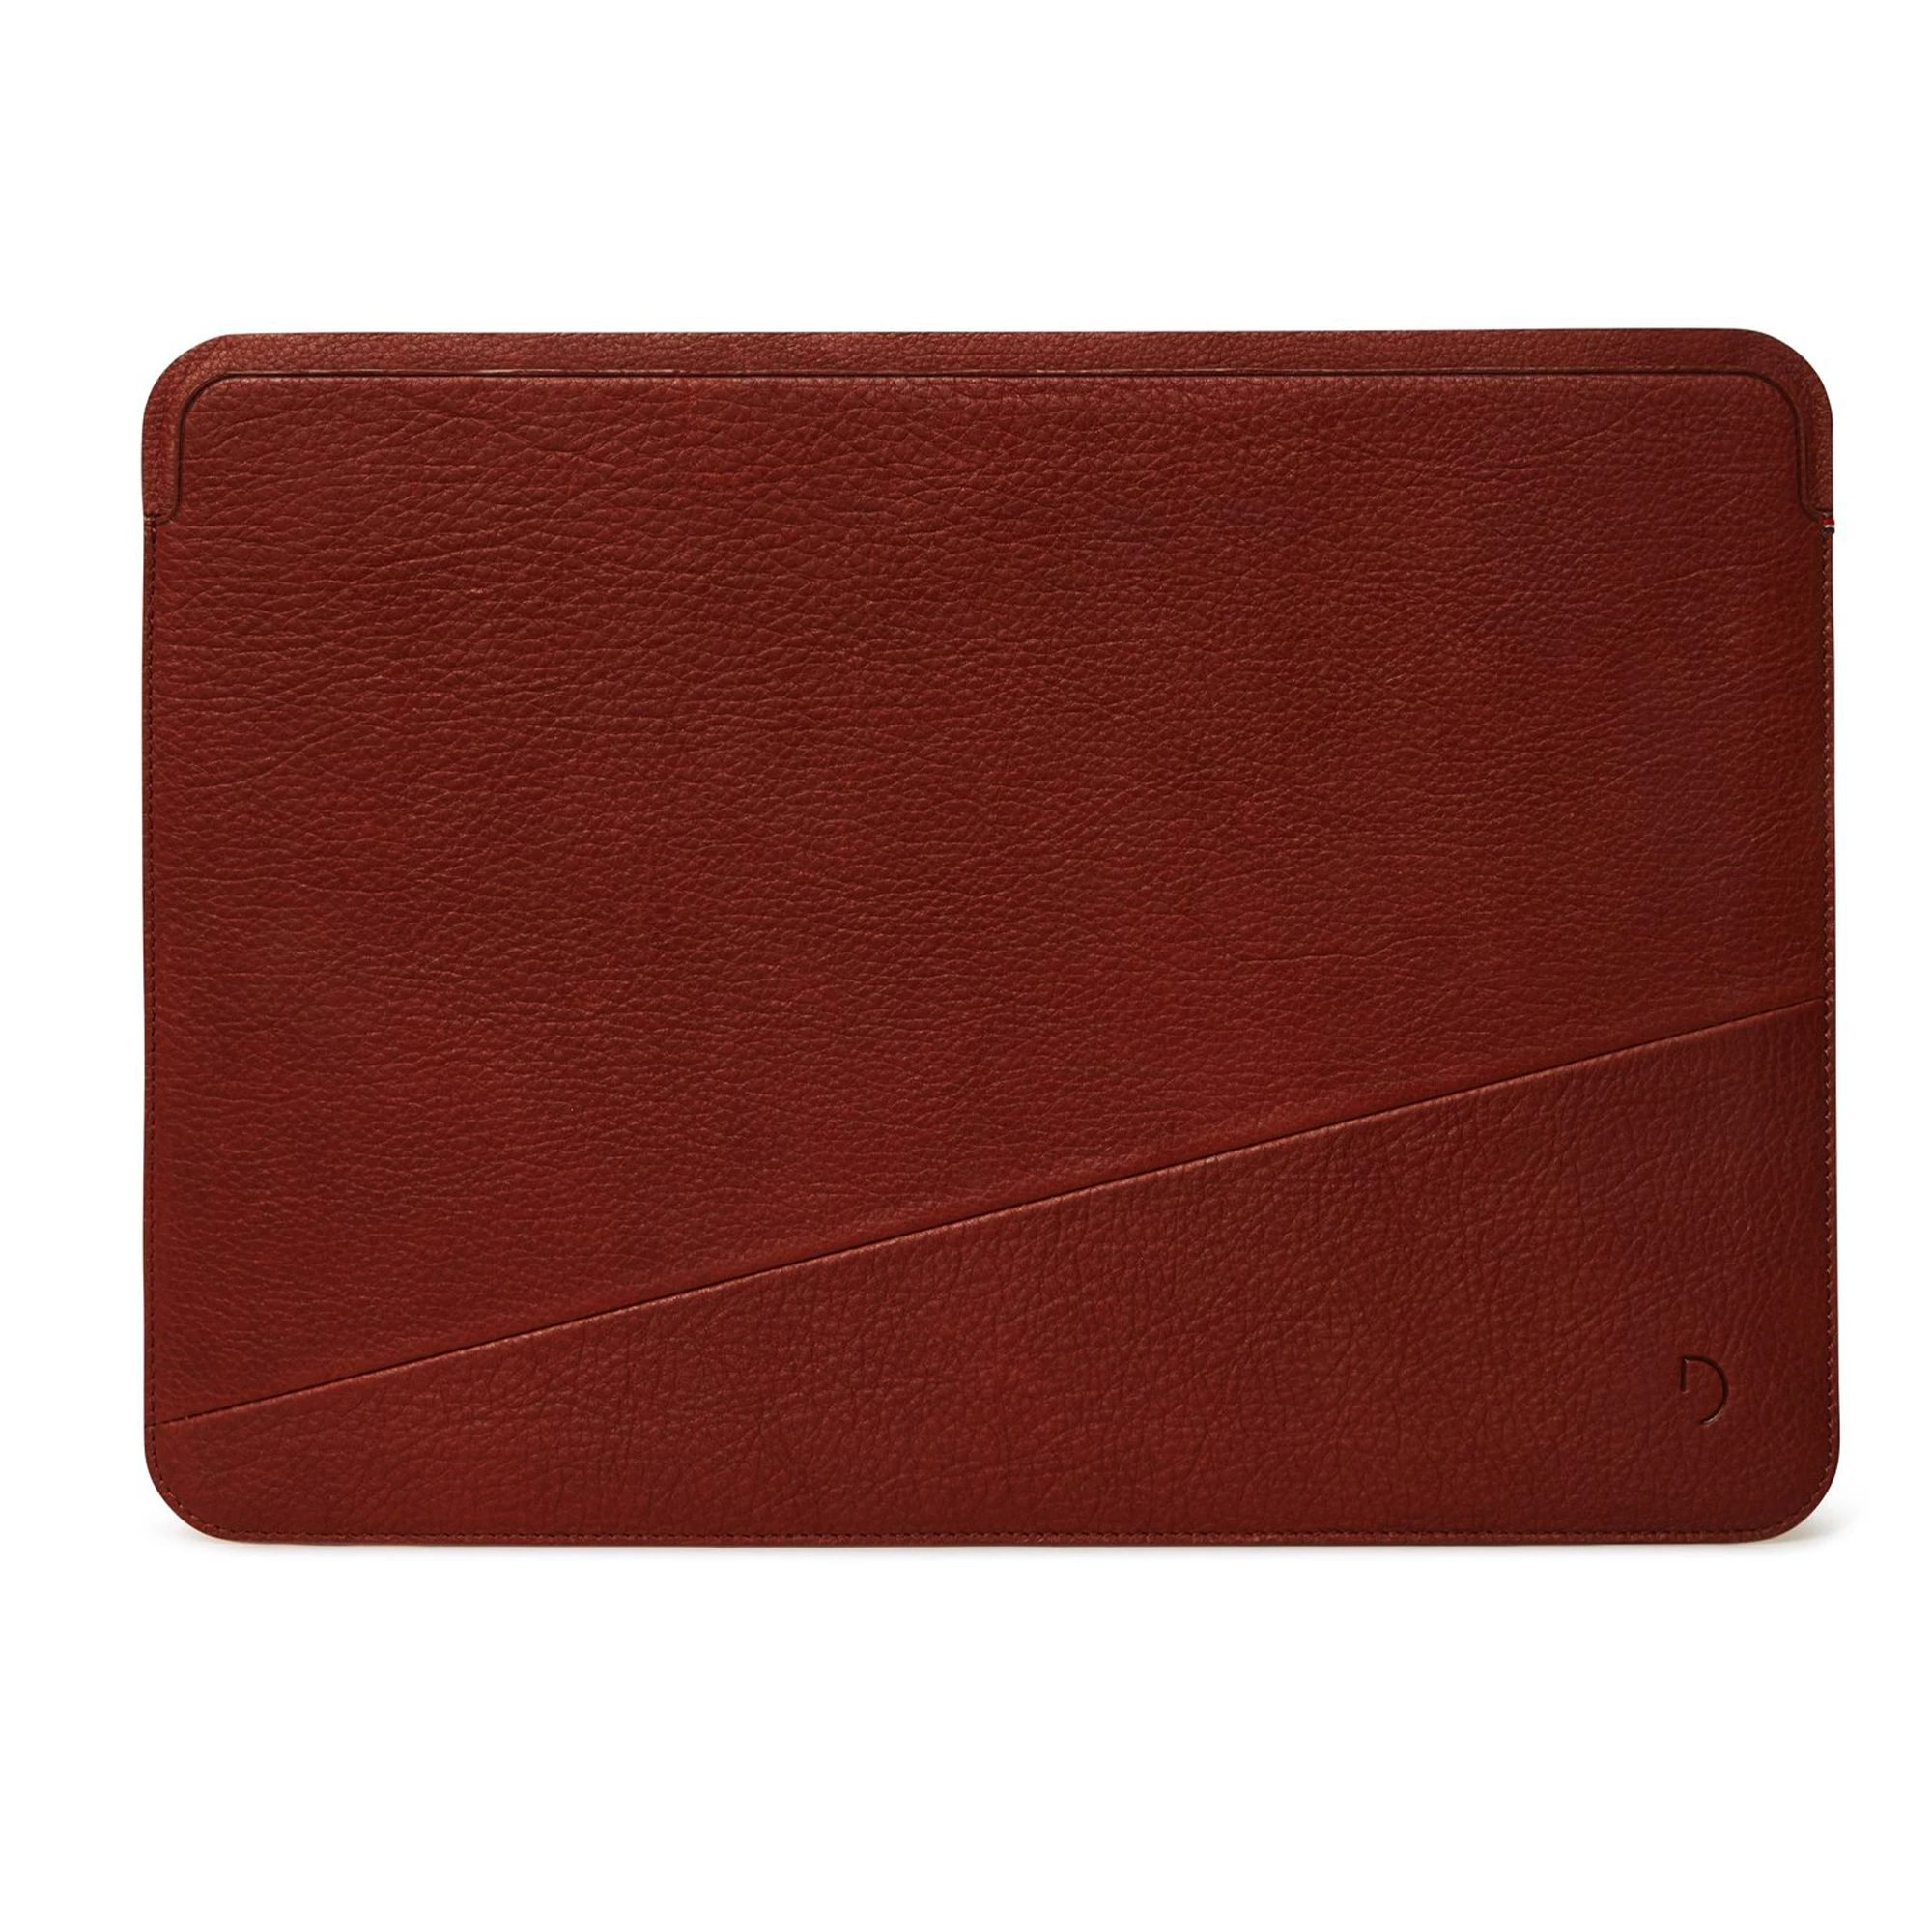 Чехол-папка DECODED Leather Frame Sleeve для MacBook 13" - Brown (D21MFS13CBN)